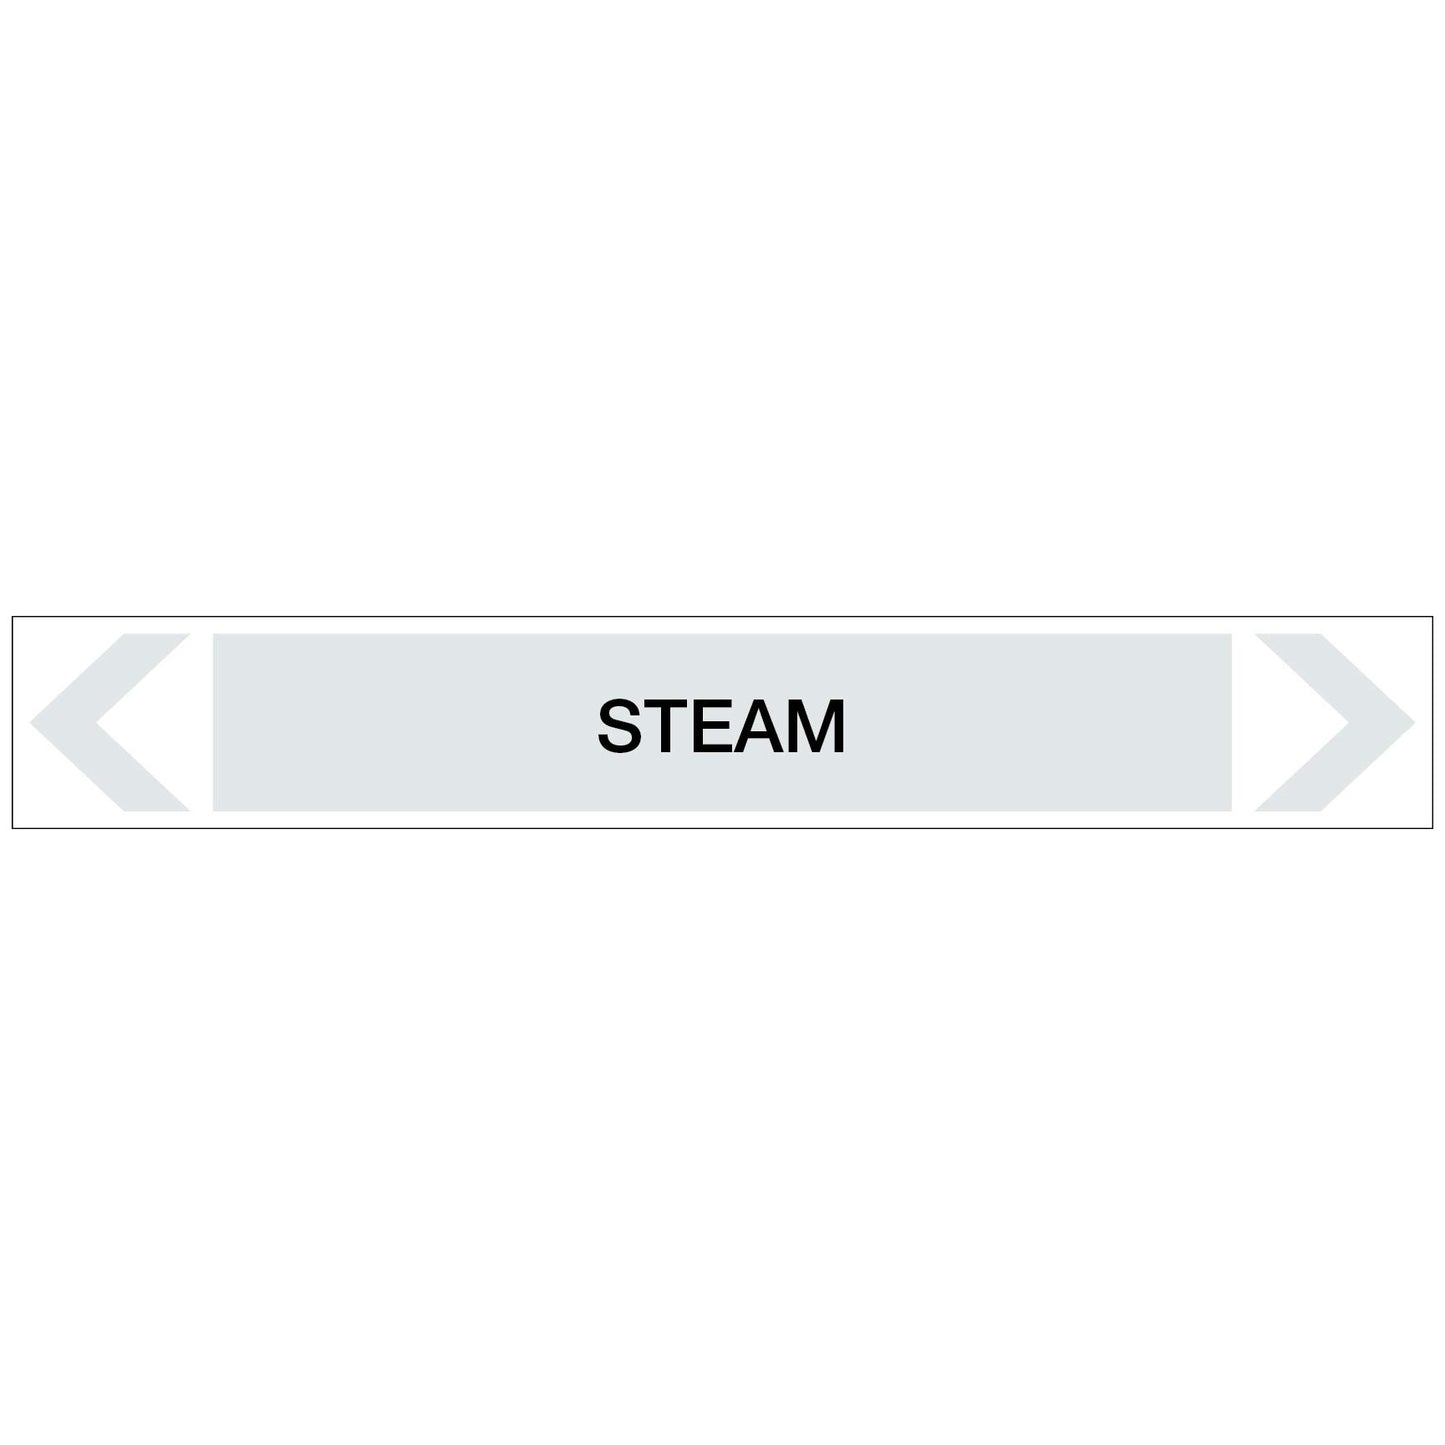 Steam - Steam - Pipe Marker Sticker